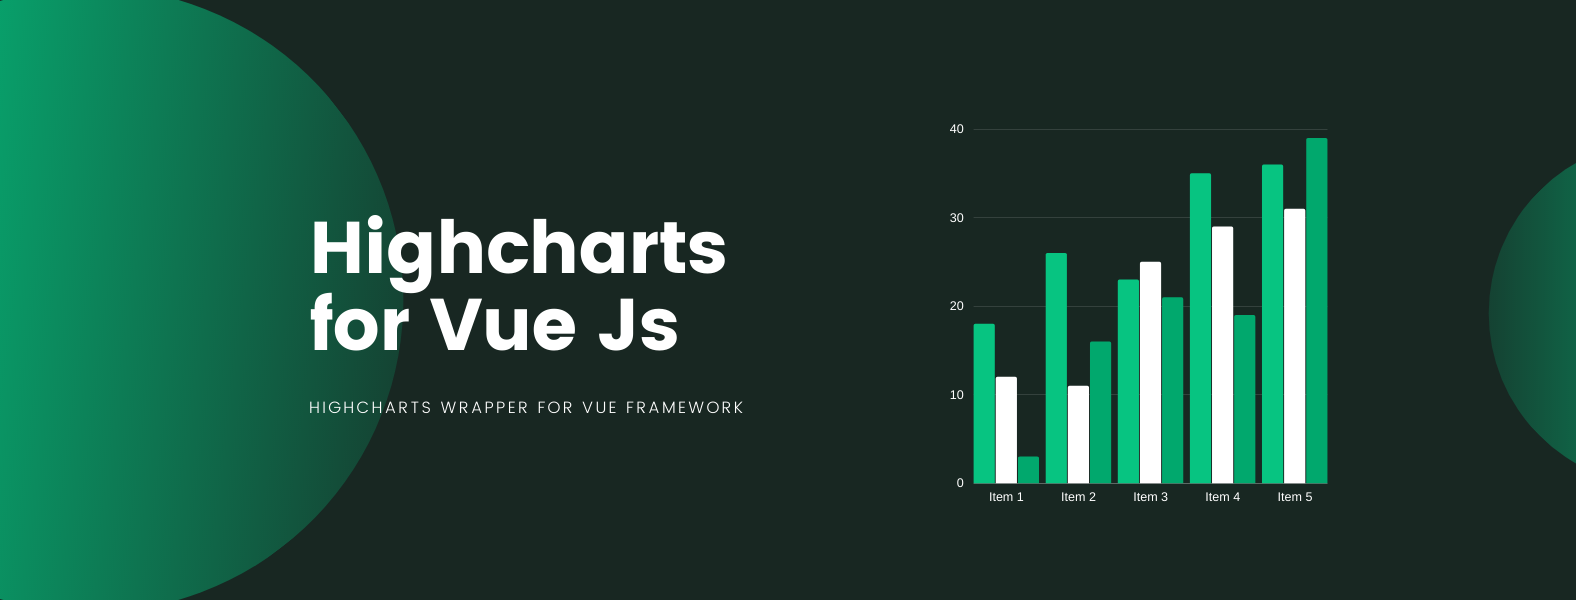 Highcharts-Vue - Highcharts wrapper for Vue framework 